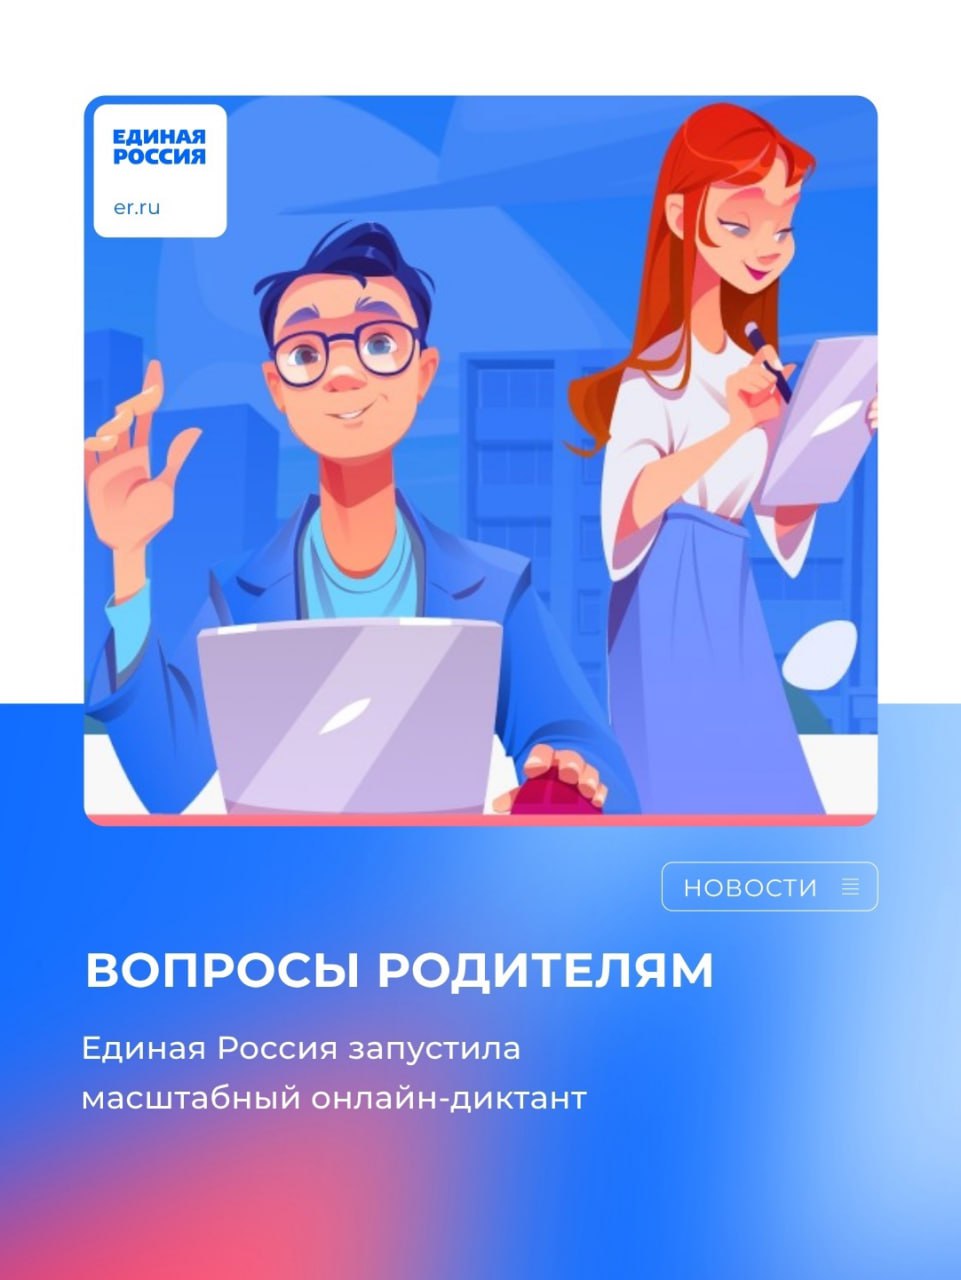 Приглашаем принять участие  во  Всероссийском онлайн-диктанте «Вопросы родителям-2».